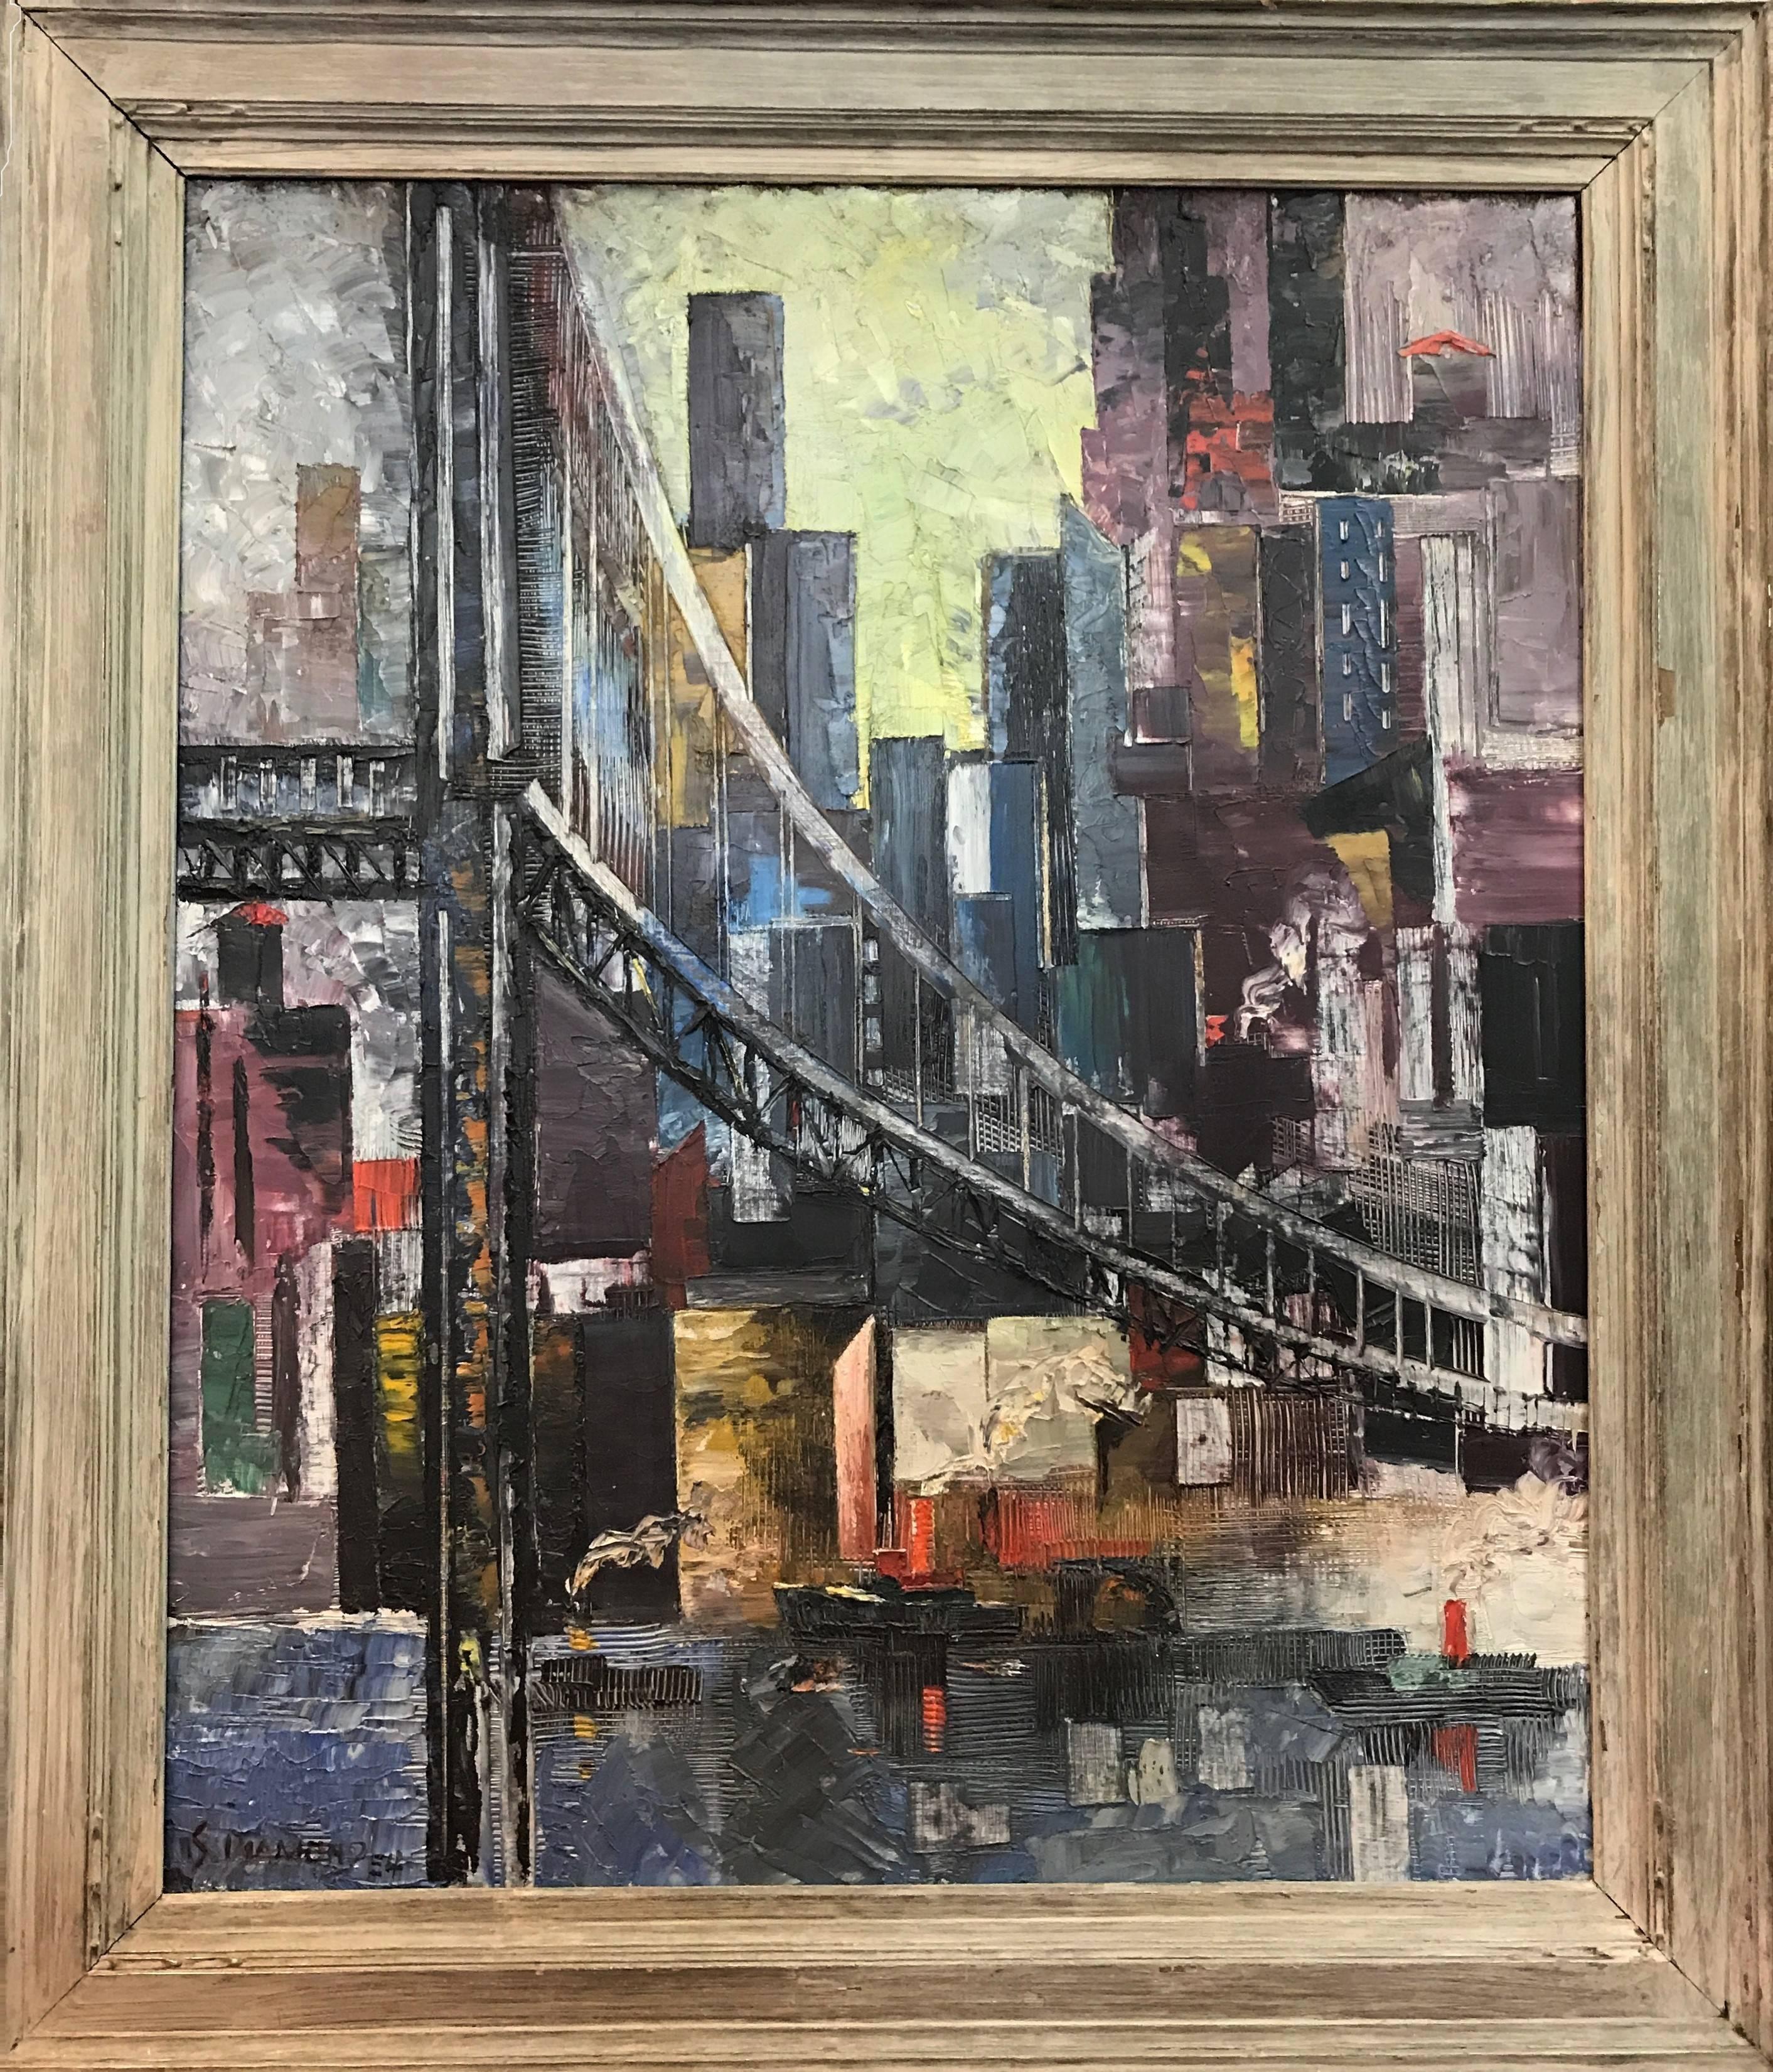 Dies ist ein doppelseitiges Gemälde - 
Seite 1: Ansicht von Manhattan, signiert unten links und datiert 1954.
Seite 2 (Rückseite): Genreszene mit Trägern.

Abmessungen: Ungerahmt: 20,5 x 30,5 Zoll Gerahmt: 32 x 37 Zoll

Sam Diamond,